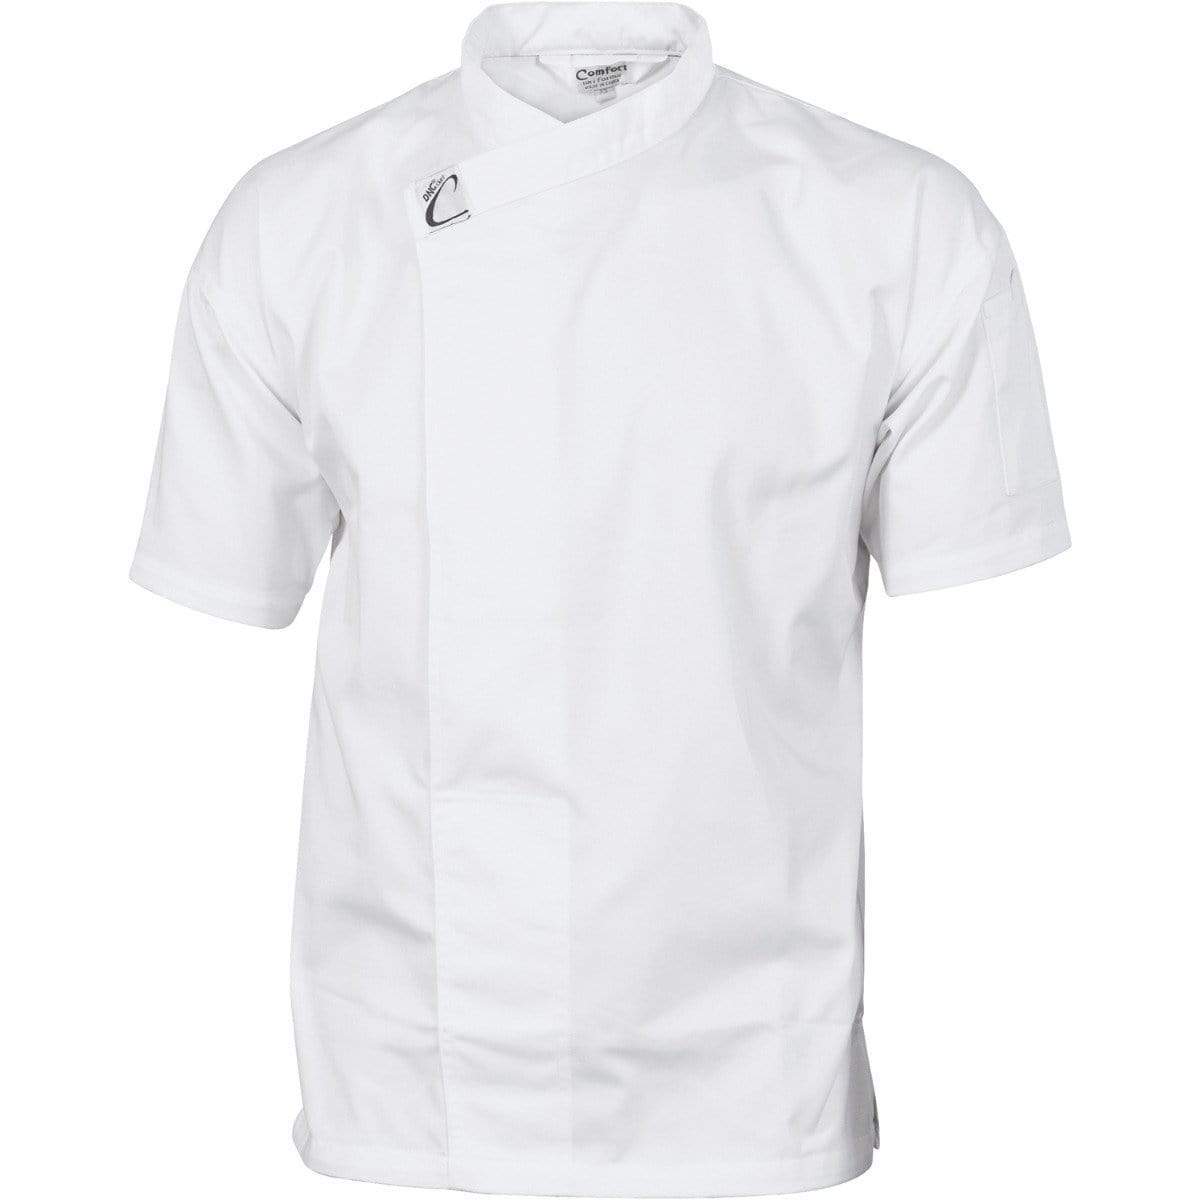 Dnc Workwear Short Sleeve Tunic - 1121 Hospitality & Chefwear DNC Workwear White XS 